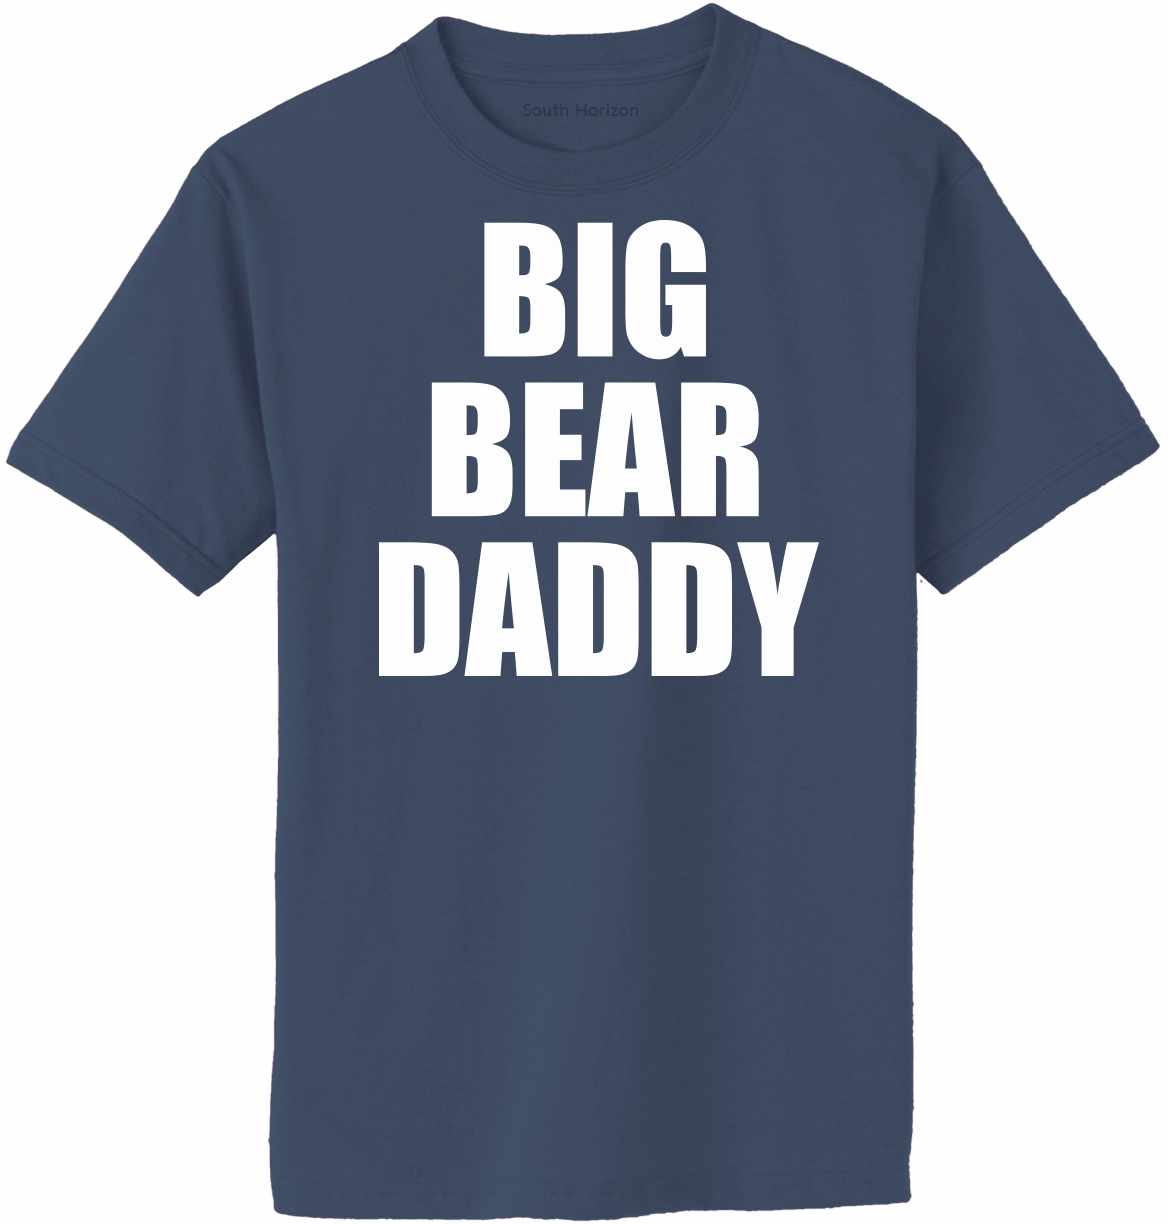 Big Bear Daddy on Adult T-Shirt